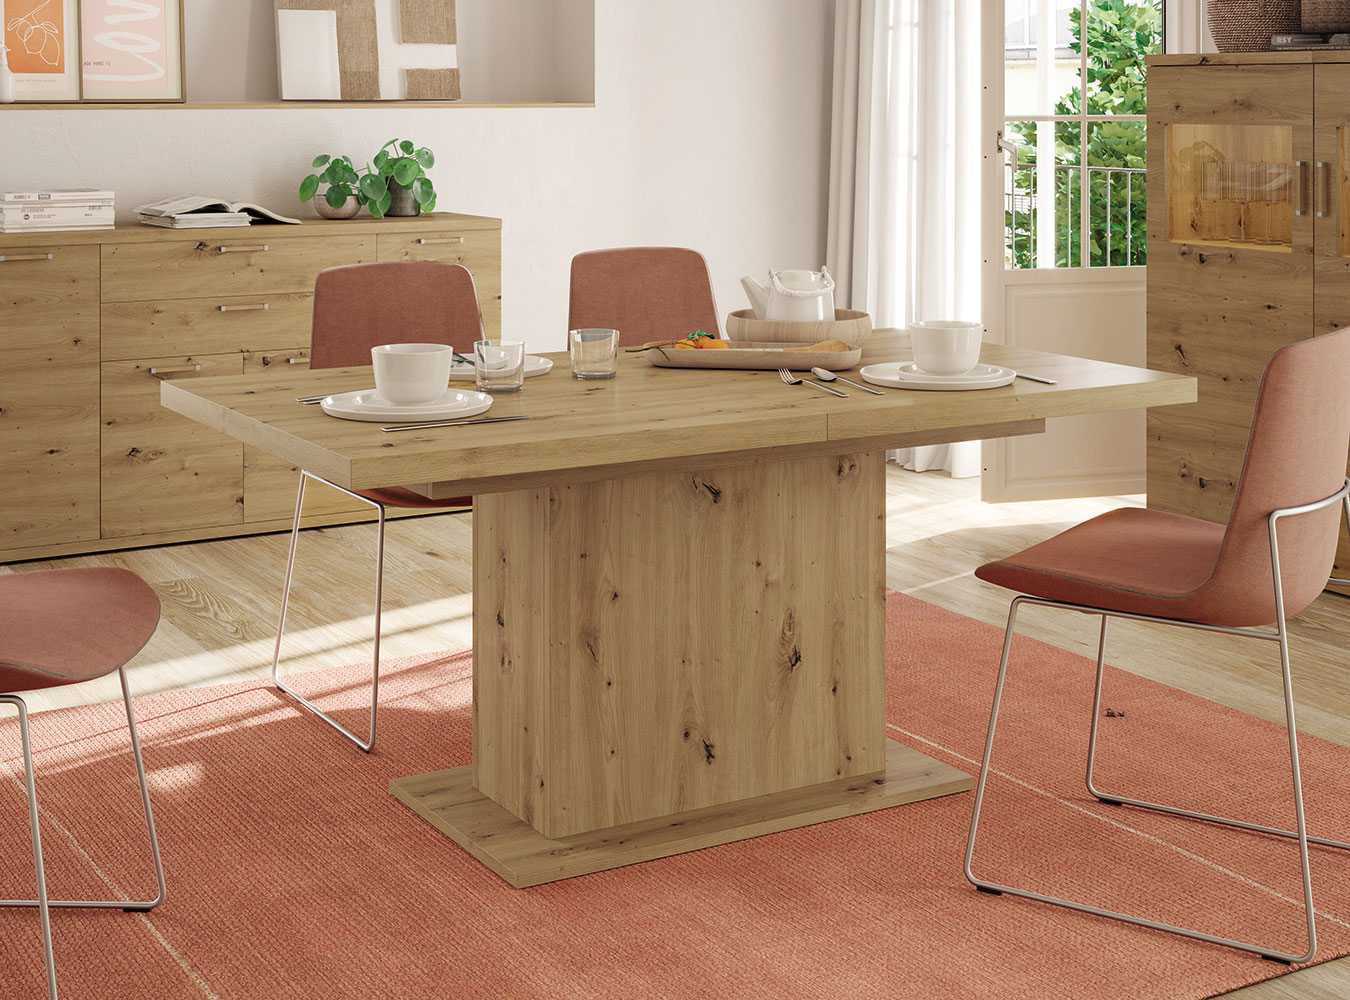 Mesa cocina cuadrada 90x90 cm extensible de diseño moderno, madera cristal..